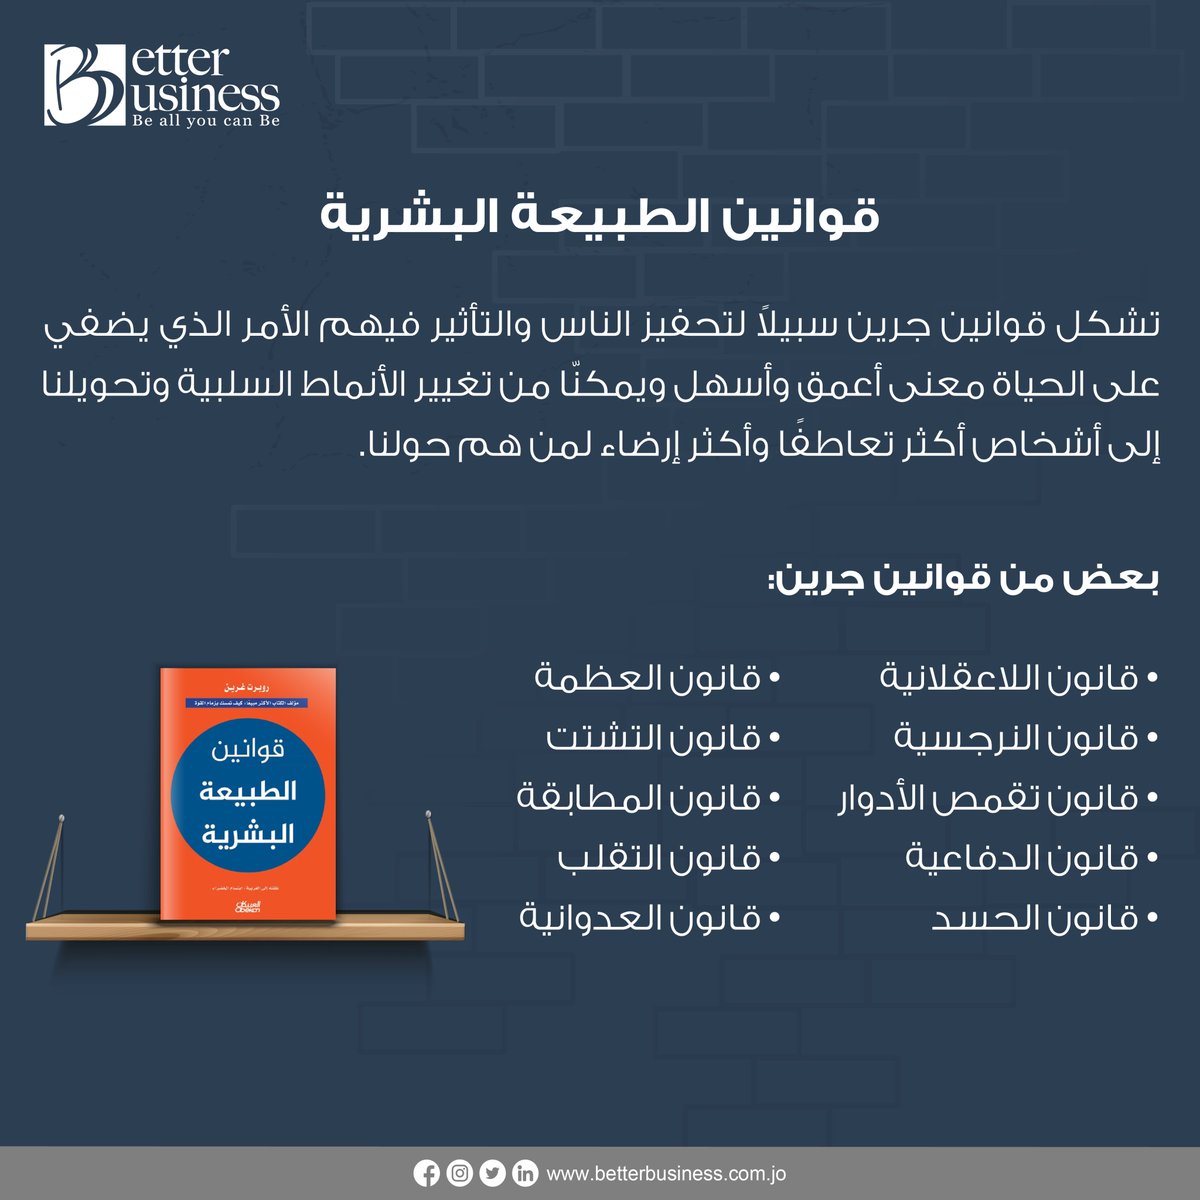 كتاب في صورة 📖

#betterbusiness #booktoread #book #ammanJordan #books